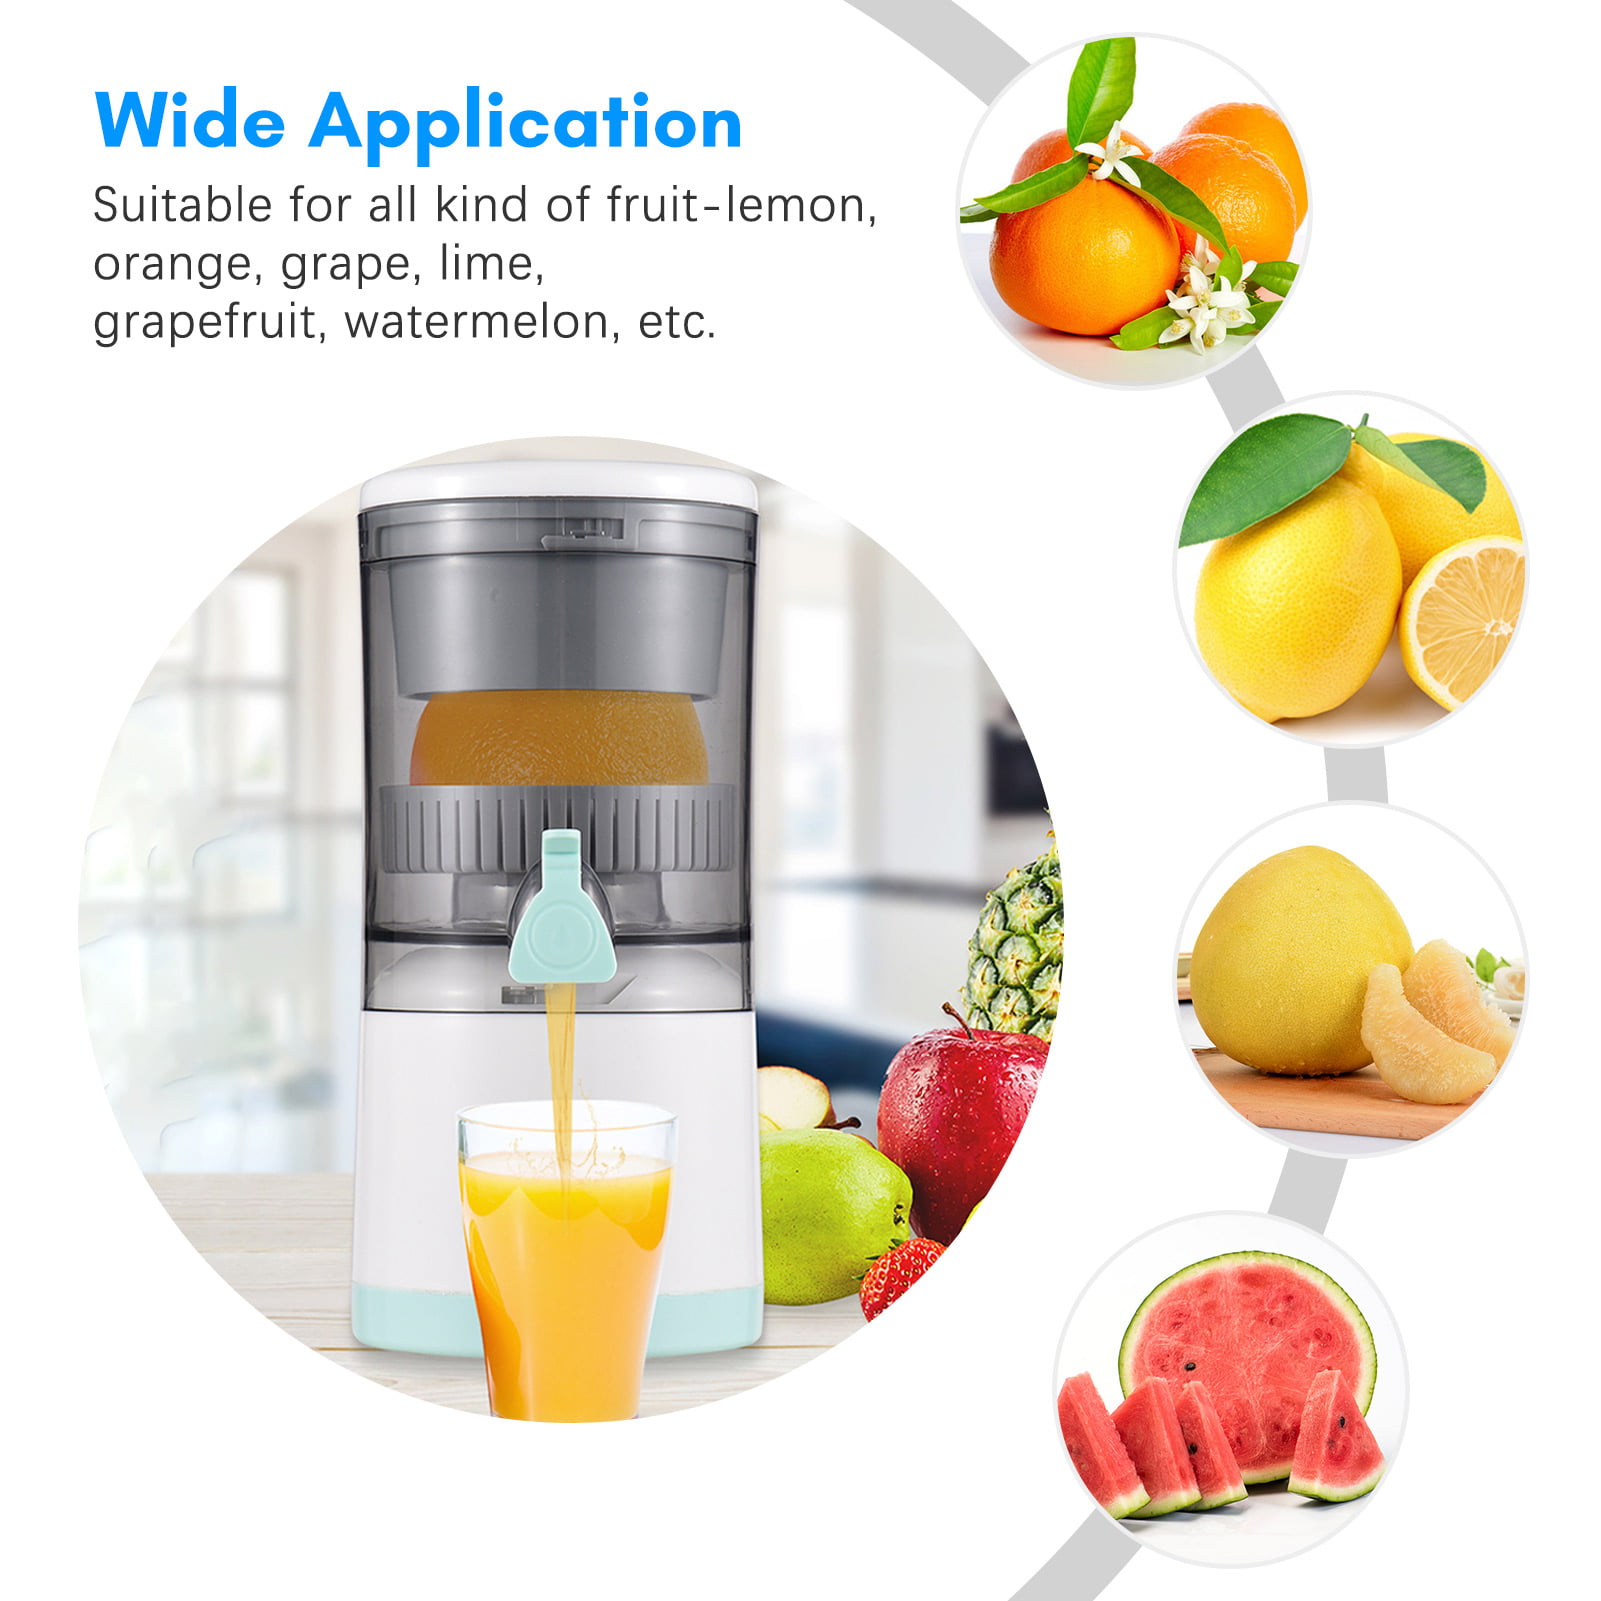 Electric Juicer Rechargeable,Portable Kitchen Gadget for making Orange  Juice,Squeezing Oranges,Lemons,Kiwi Fruit,Grapefruits,and Citrus  Juices.Comes